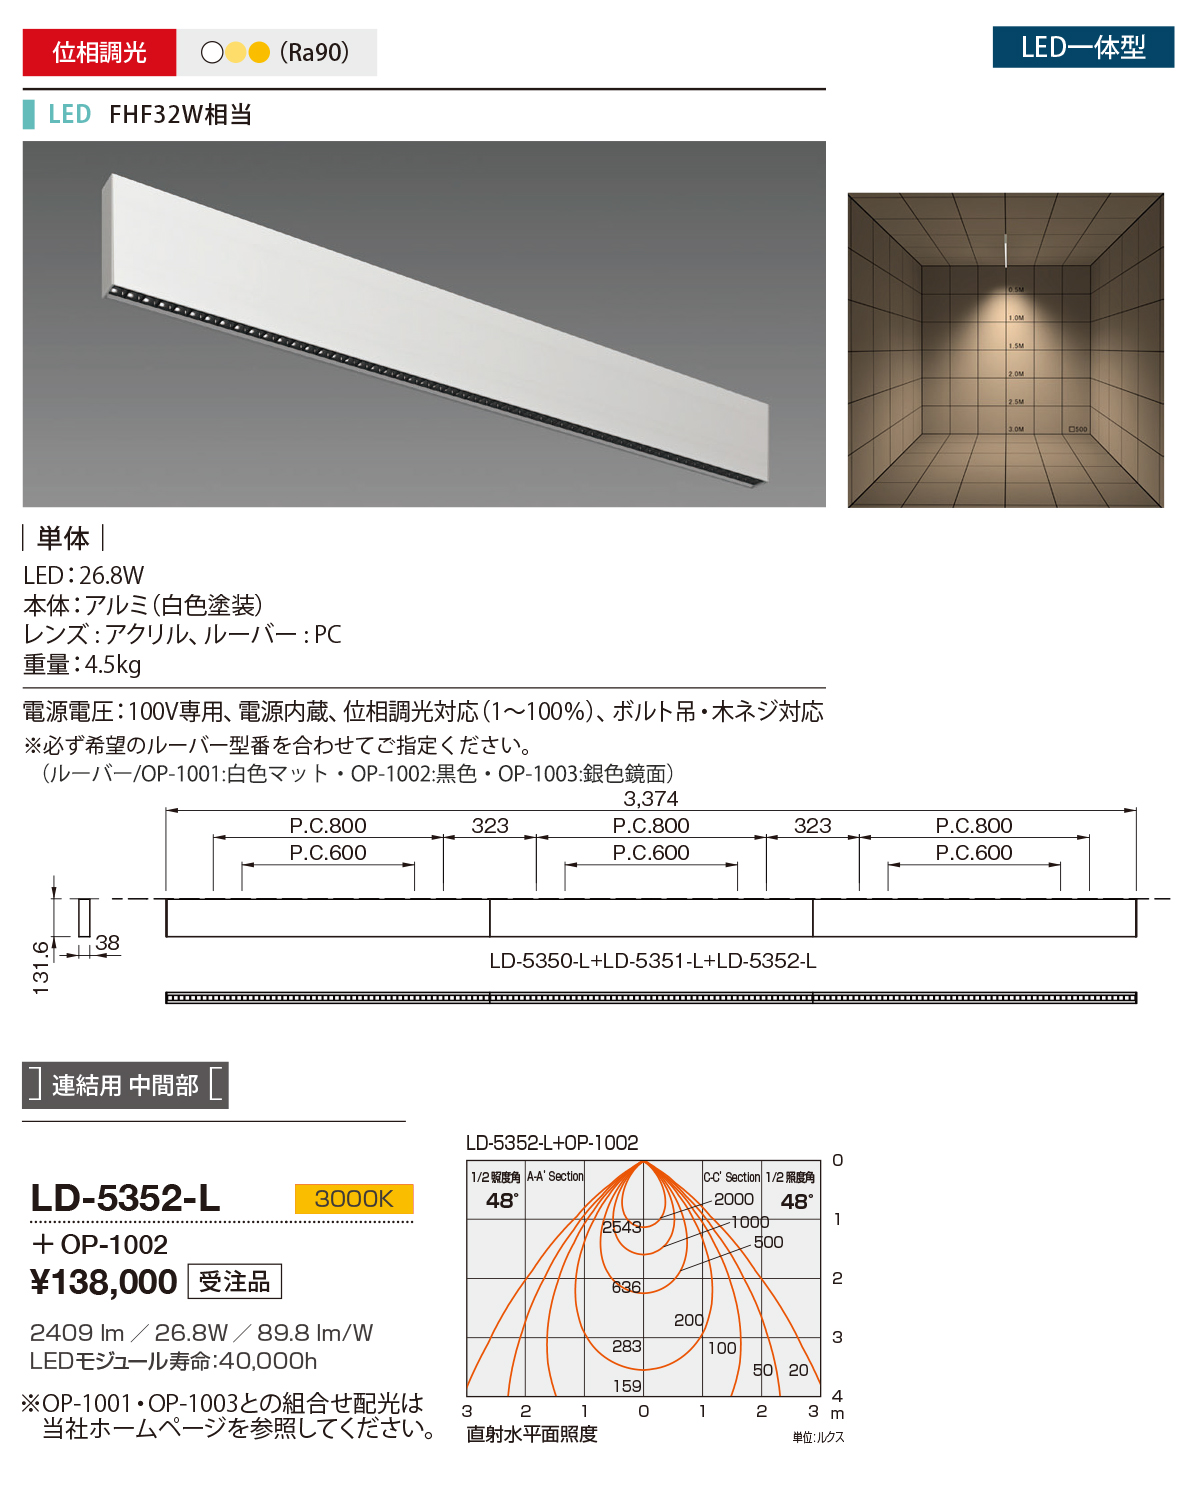 LD-5352-L(山田照明) 商品詳細 ～ 照明器具・換気扇他、電設資材販売の